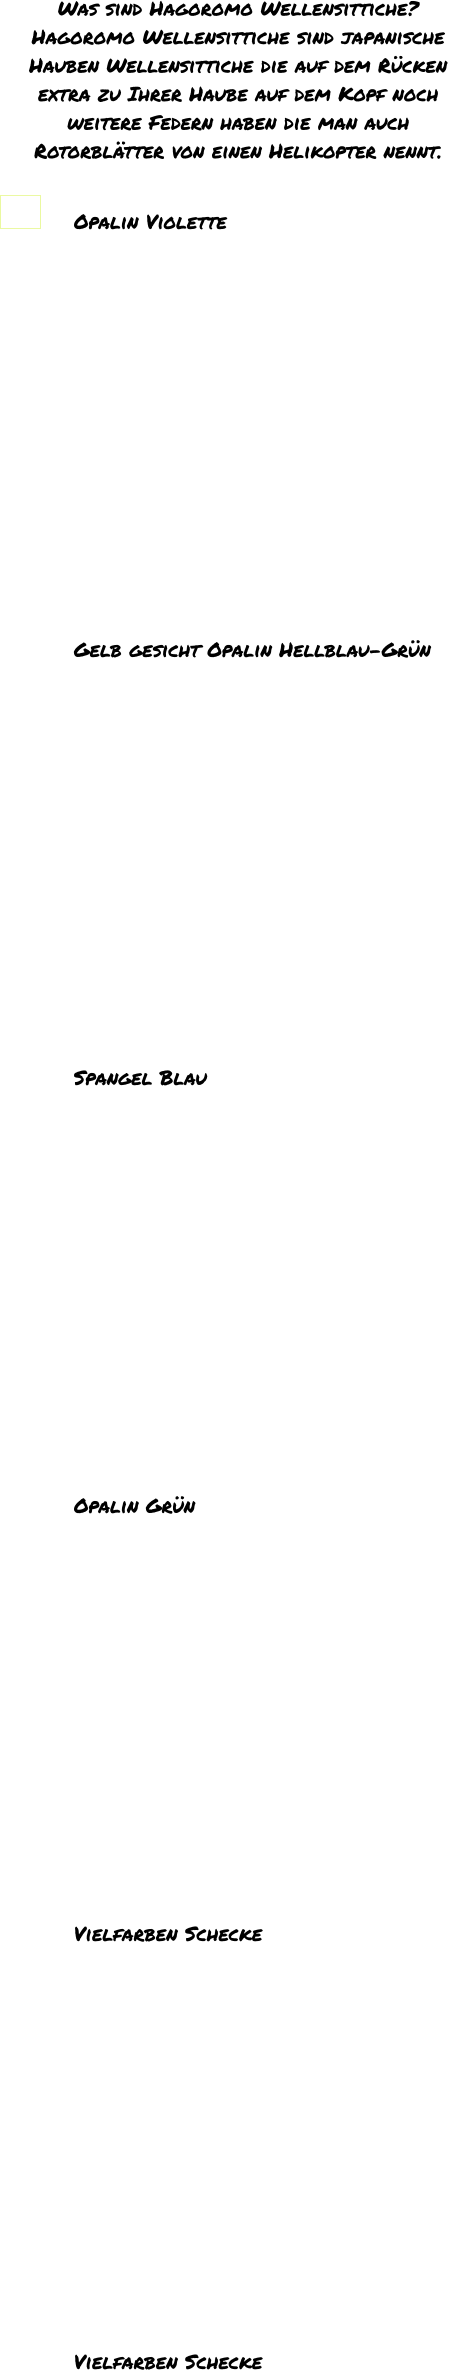 Was sind Hagoromo Wellensittiche? Hagoromo Wellensittiche sind japanische  Hauben Wellensittiche die auf dem Rücken  extra zu Ihrer Haube auf dem Kopf noch  weitere Federn haben die man auch  Rotorblätter von einen Helikopter nennt.   Opalin Violette                                                    Gelb gesicht Opalin Hellblau-Grün               Spangel Blau                                                      Opalin Grün               Vielfarben Schecke                                               Vielfarben Schecke